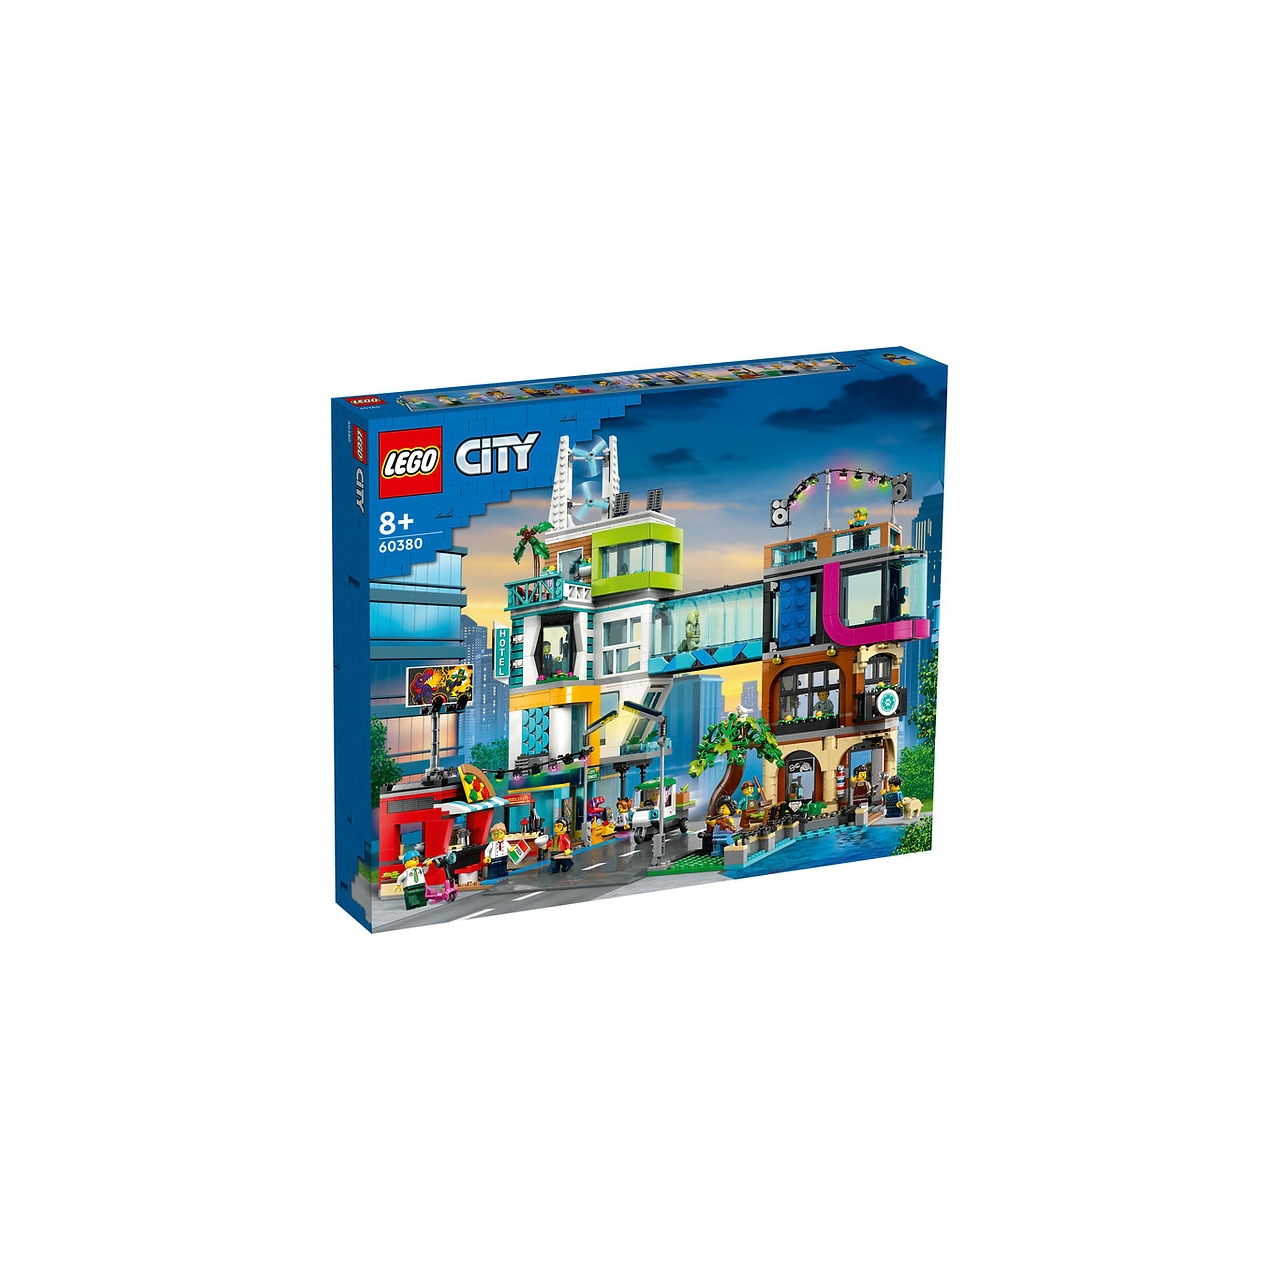 Конструктор Lego City Центр города, 2010 деталей, 60380 cubicfun 3d пазл торговый центр суперзвезды 157 деталей